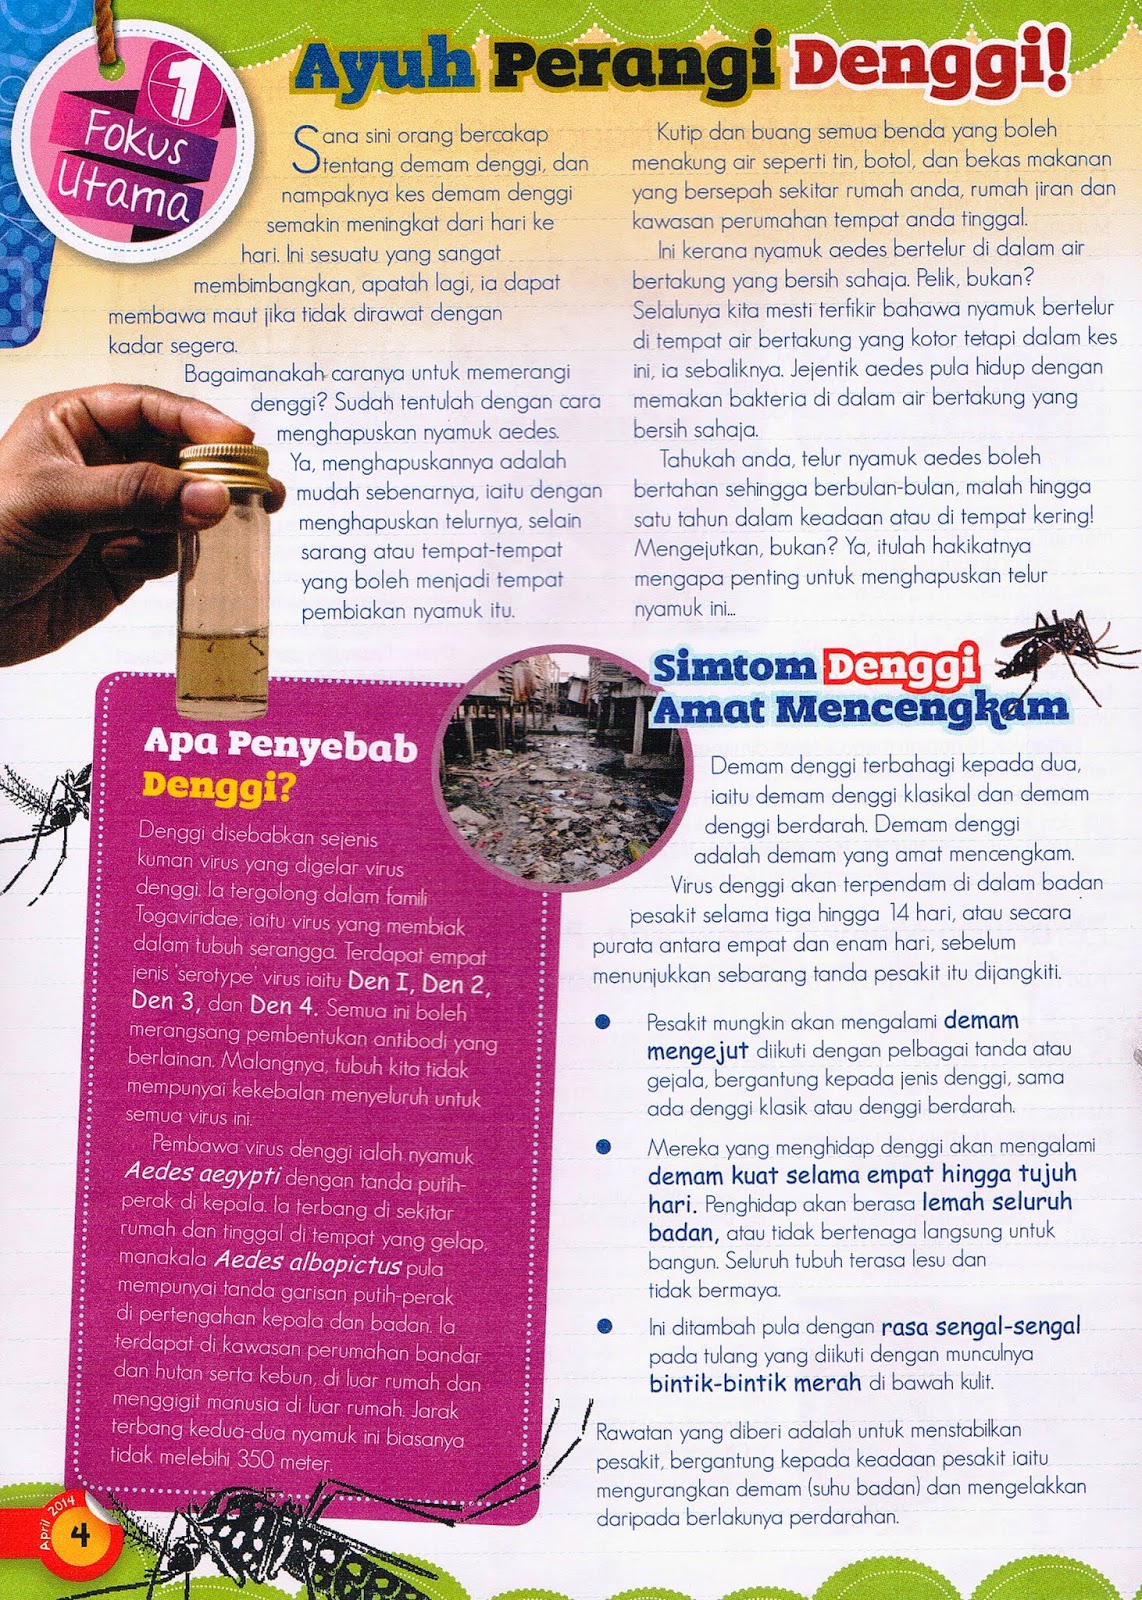 Dengue Patrol SK Seri Sentosa: Info Denggi